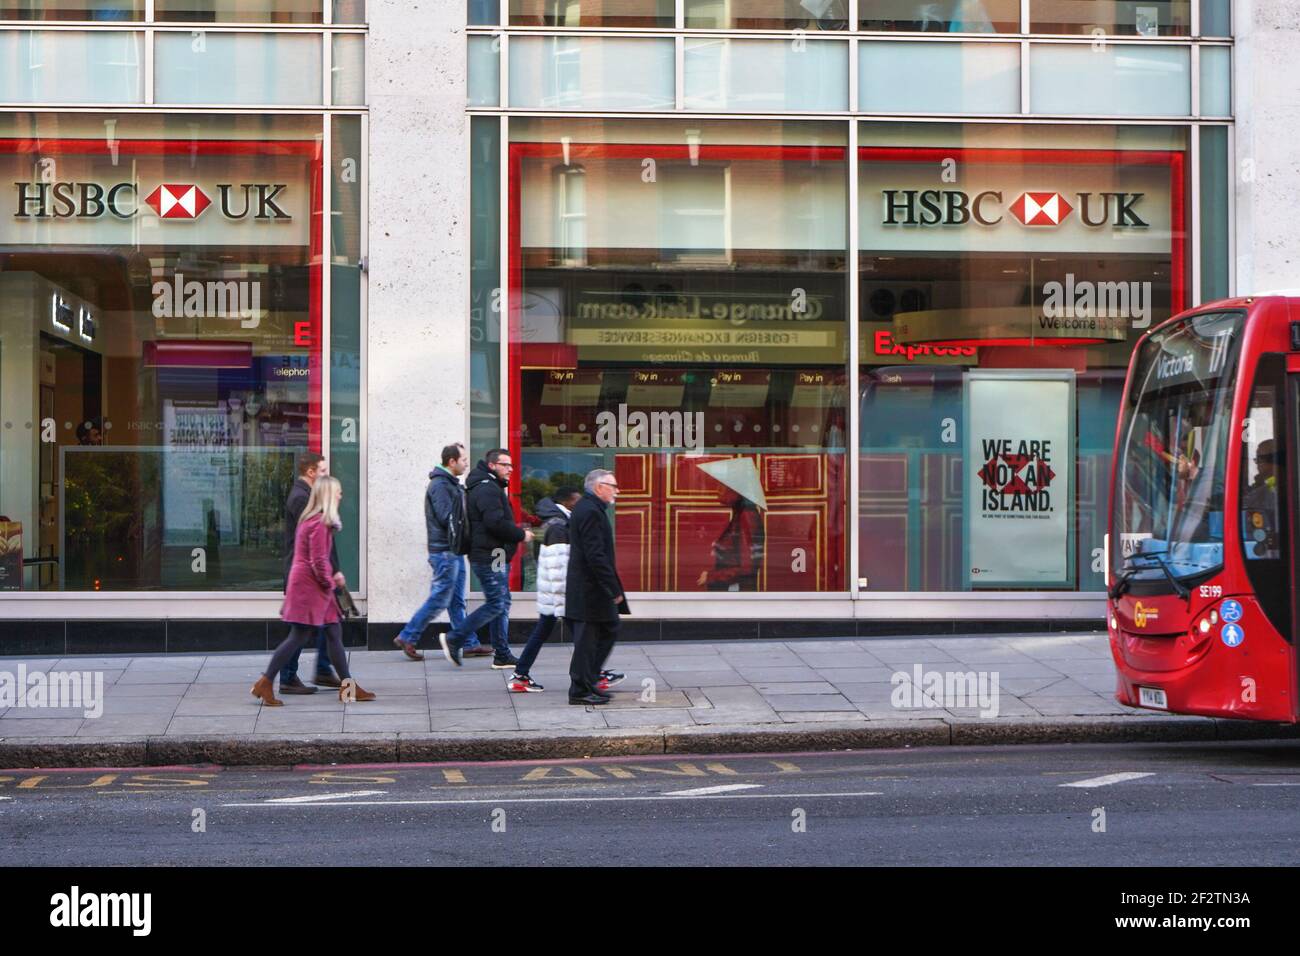 Uk hsbc HSBC (UK)